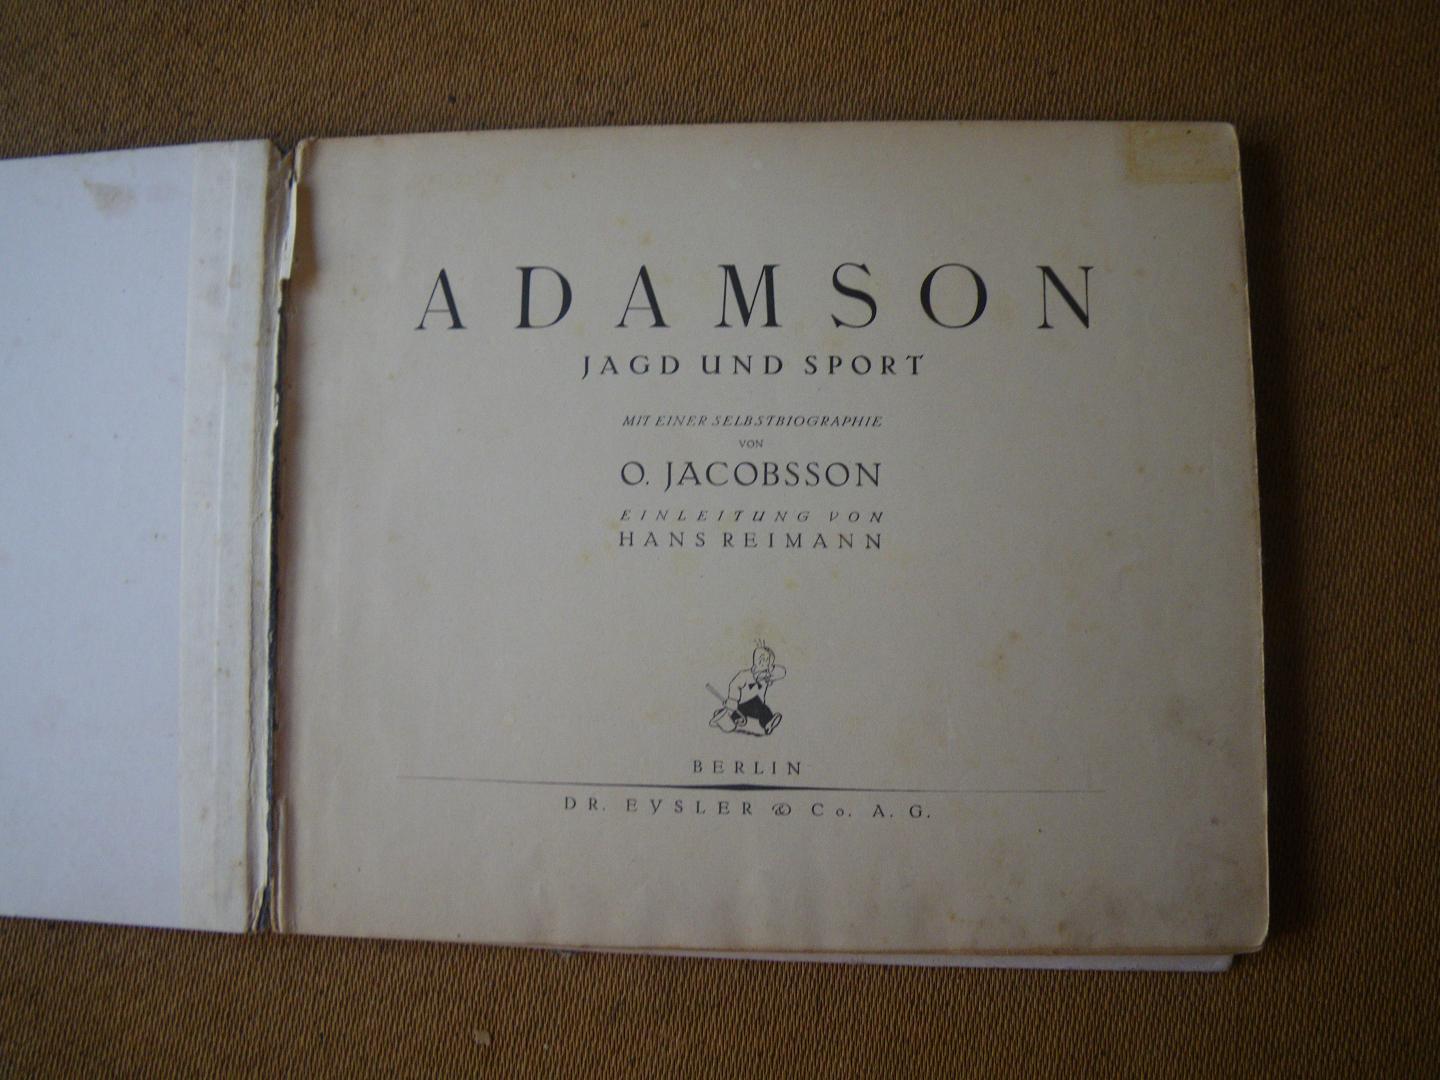 O. Jacobsson/Hans Reimann - Adamson: Jagd und Sport